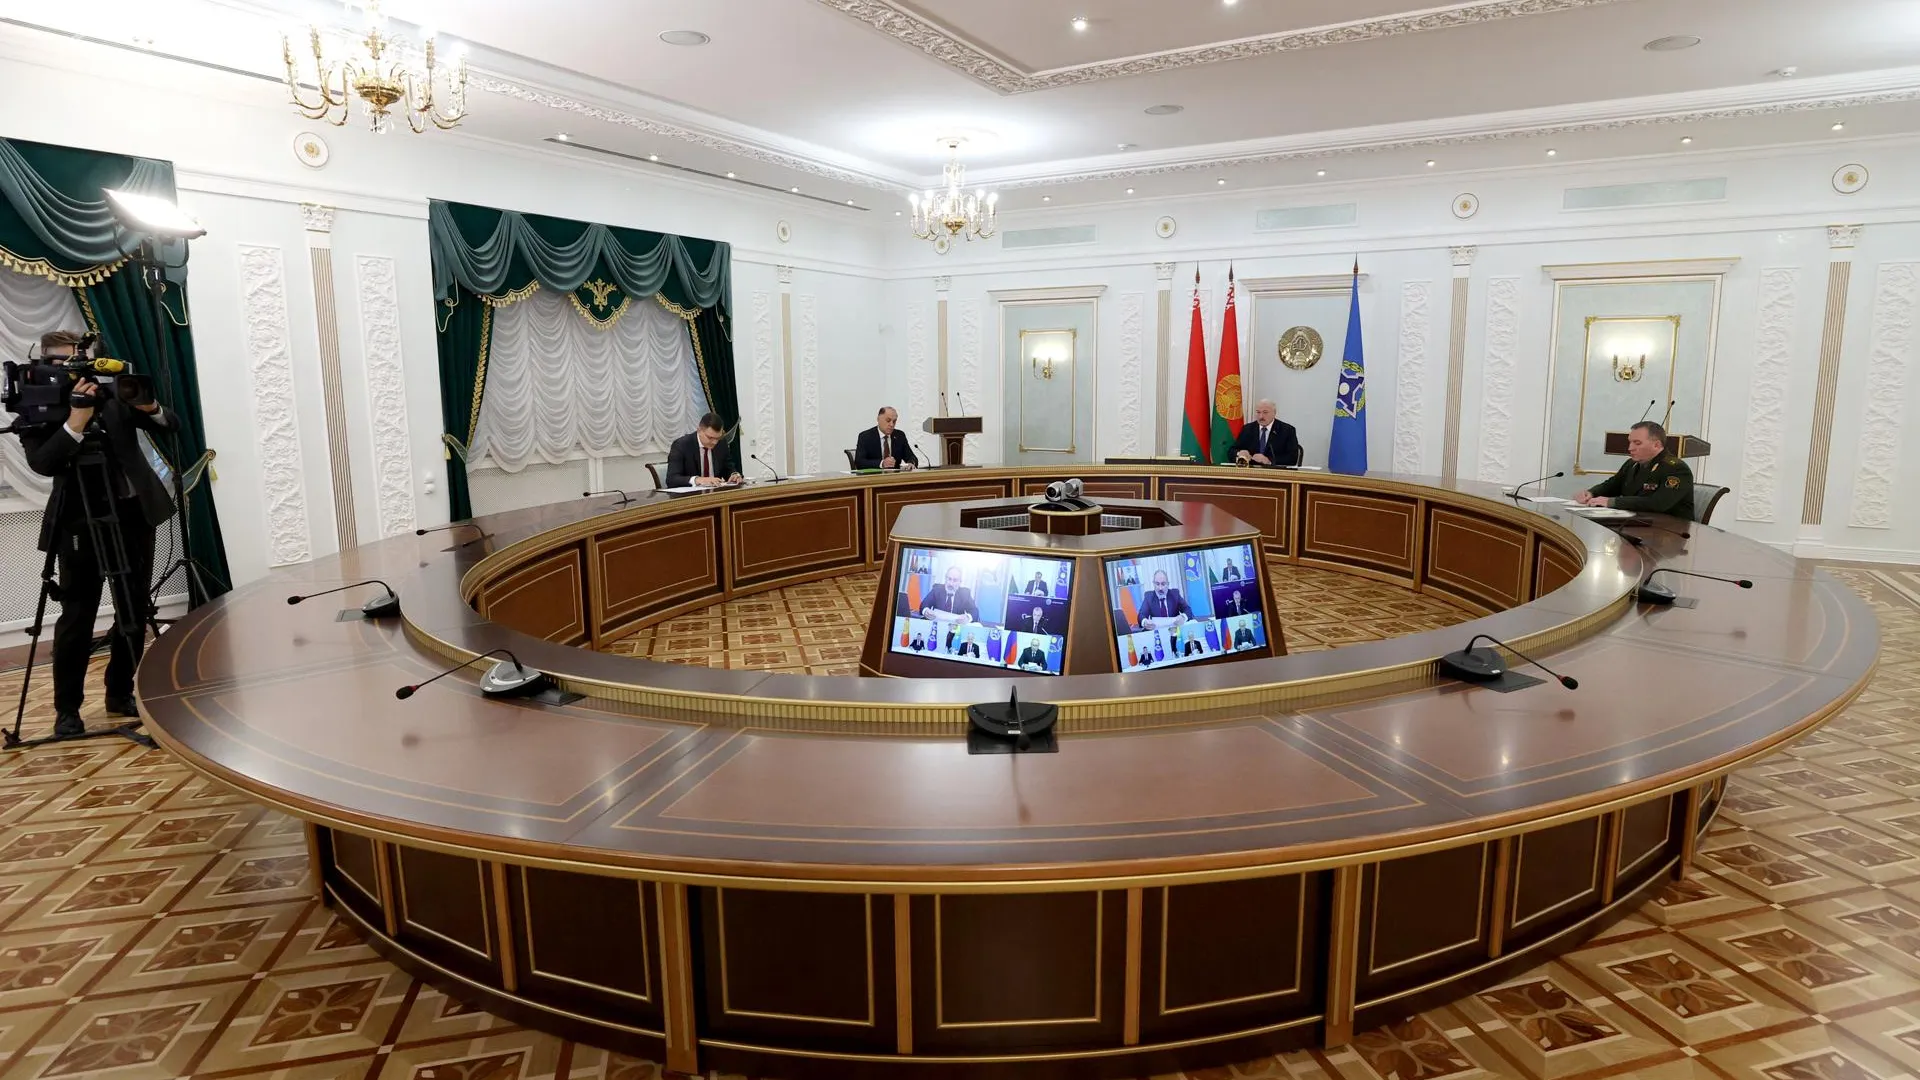 Официальный сайт президента Республики Беларусь